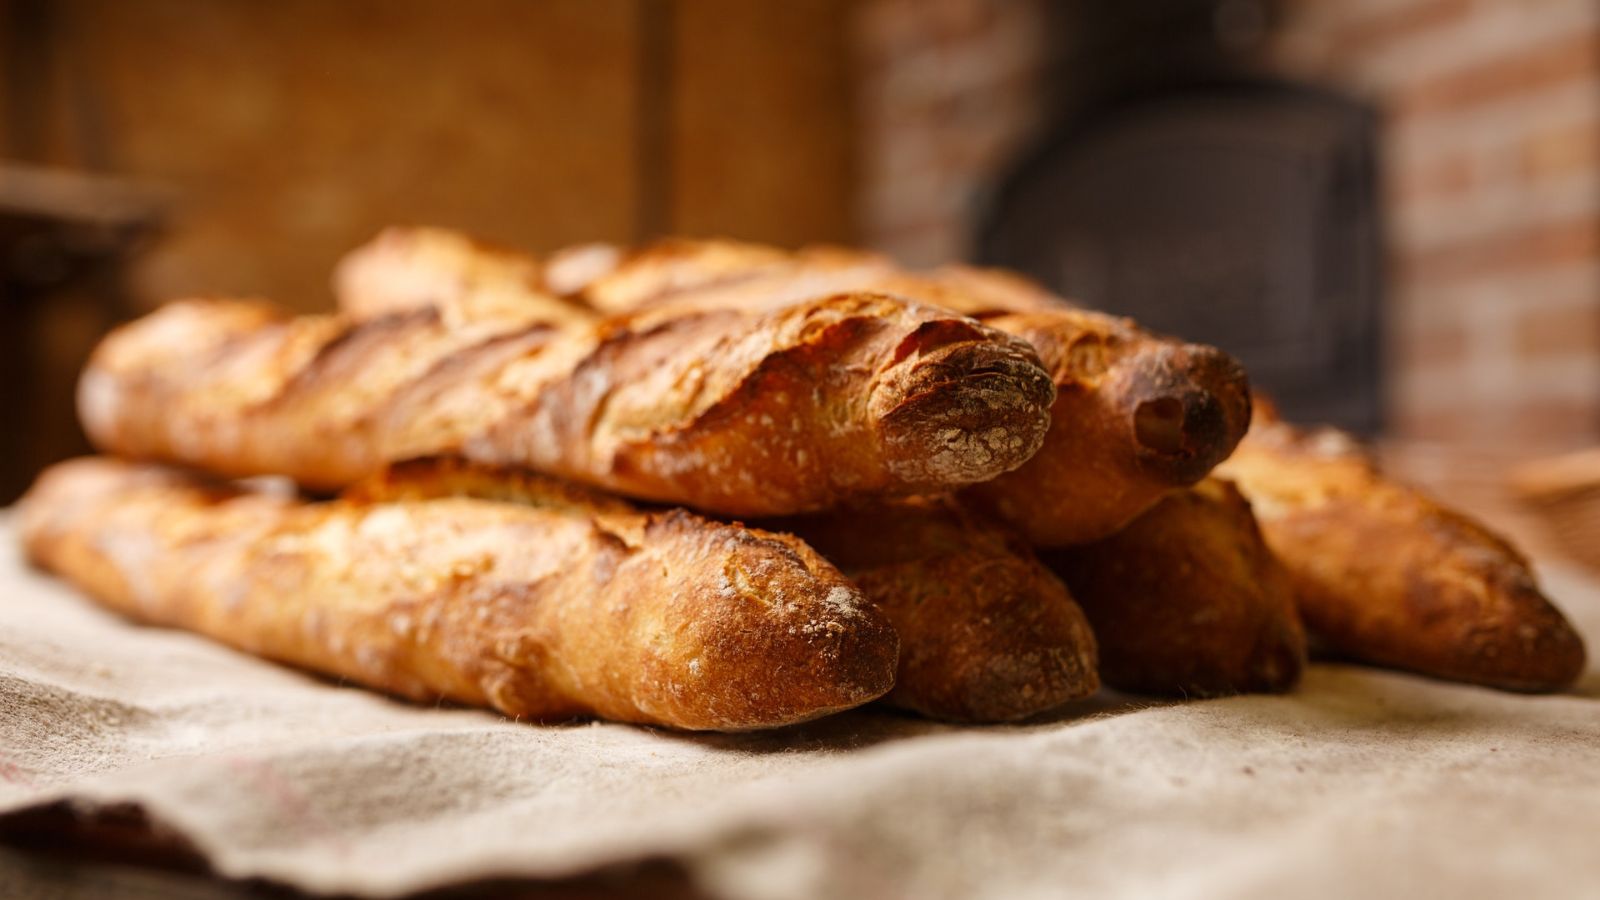 Pháp - bánh mì Bánh mì Pháp là loại ổ bánh mì phân biệt được vì chiều dài hơn chiều rộng nhiều và nó có vỏ giòn. Ổ bánh mì Pháp thường rộng 5–6 cm và cao 3–4 cm, nhưng dài tới một mét. Nó thường nặng chỉ 250 gam. Những ổ bánh mì Pháp ngắn thường dùng làm bánh kẹp. Bánh mì Pháp thường được cắt đôi và quét pa tê hay phô mai. Wikipedia